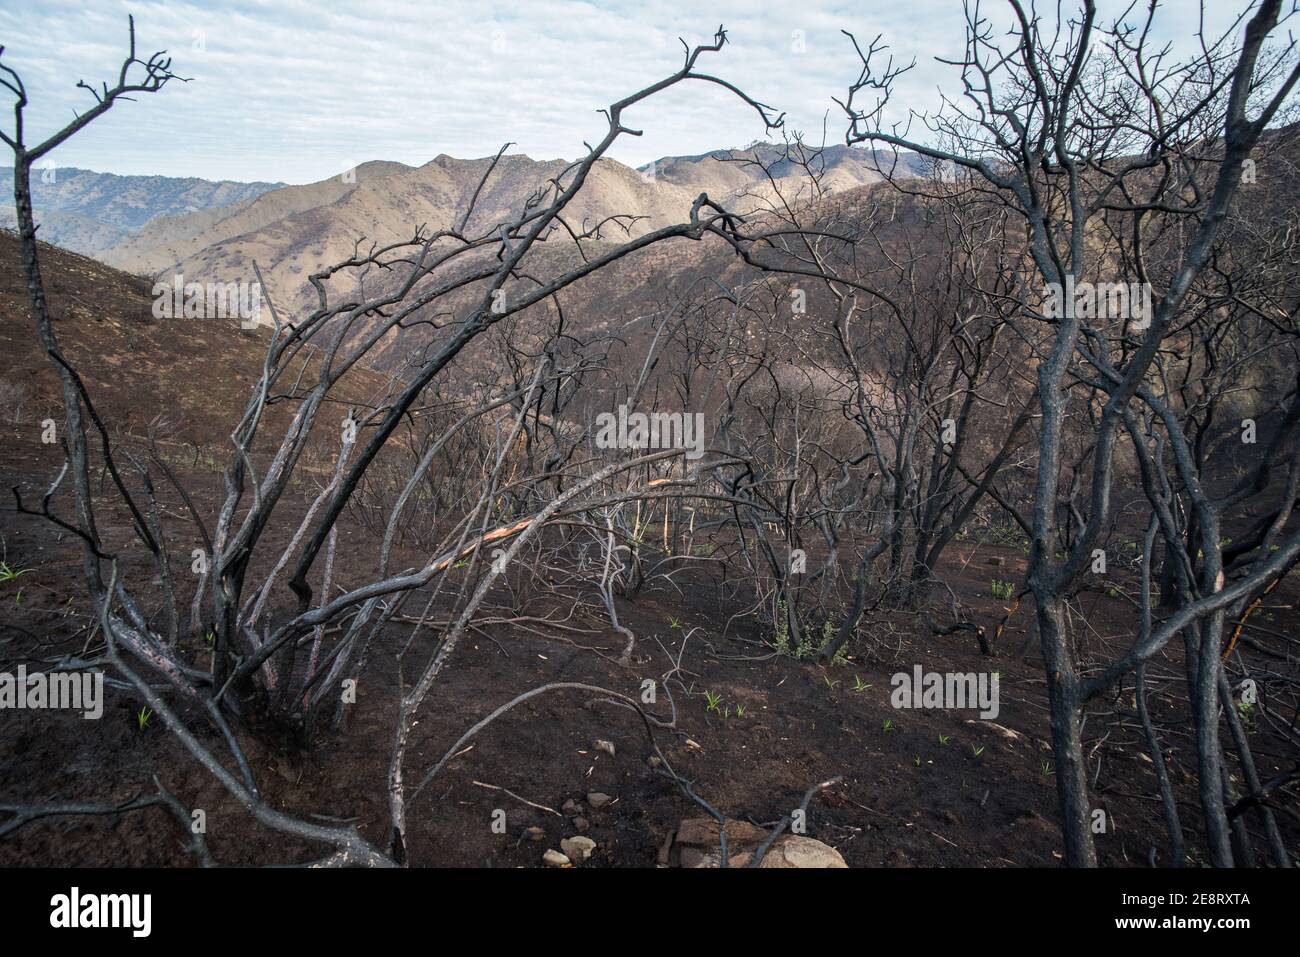 Végétation morte et brûlée laissée debout après que des feux de forêt aient traversé cette partie de la Californie laissant derrière eux un paysage charmé. Banque D'Images